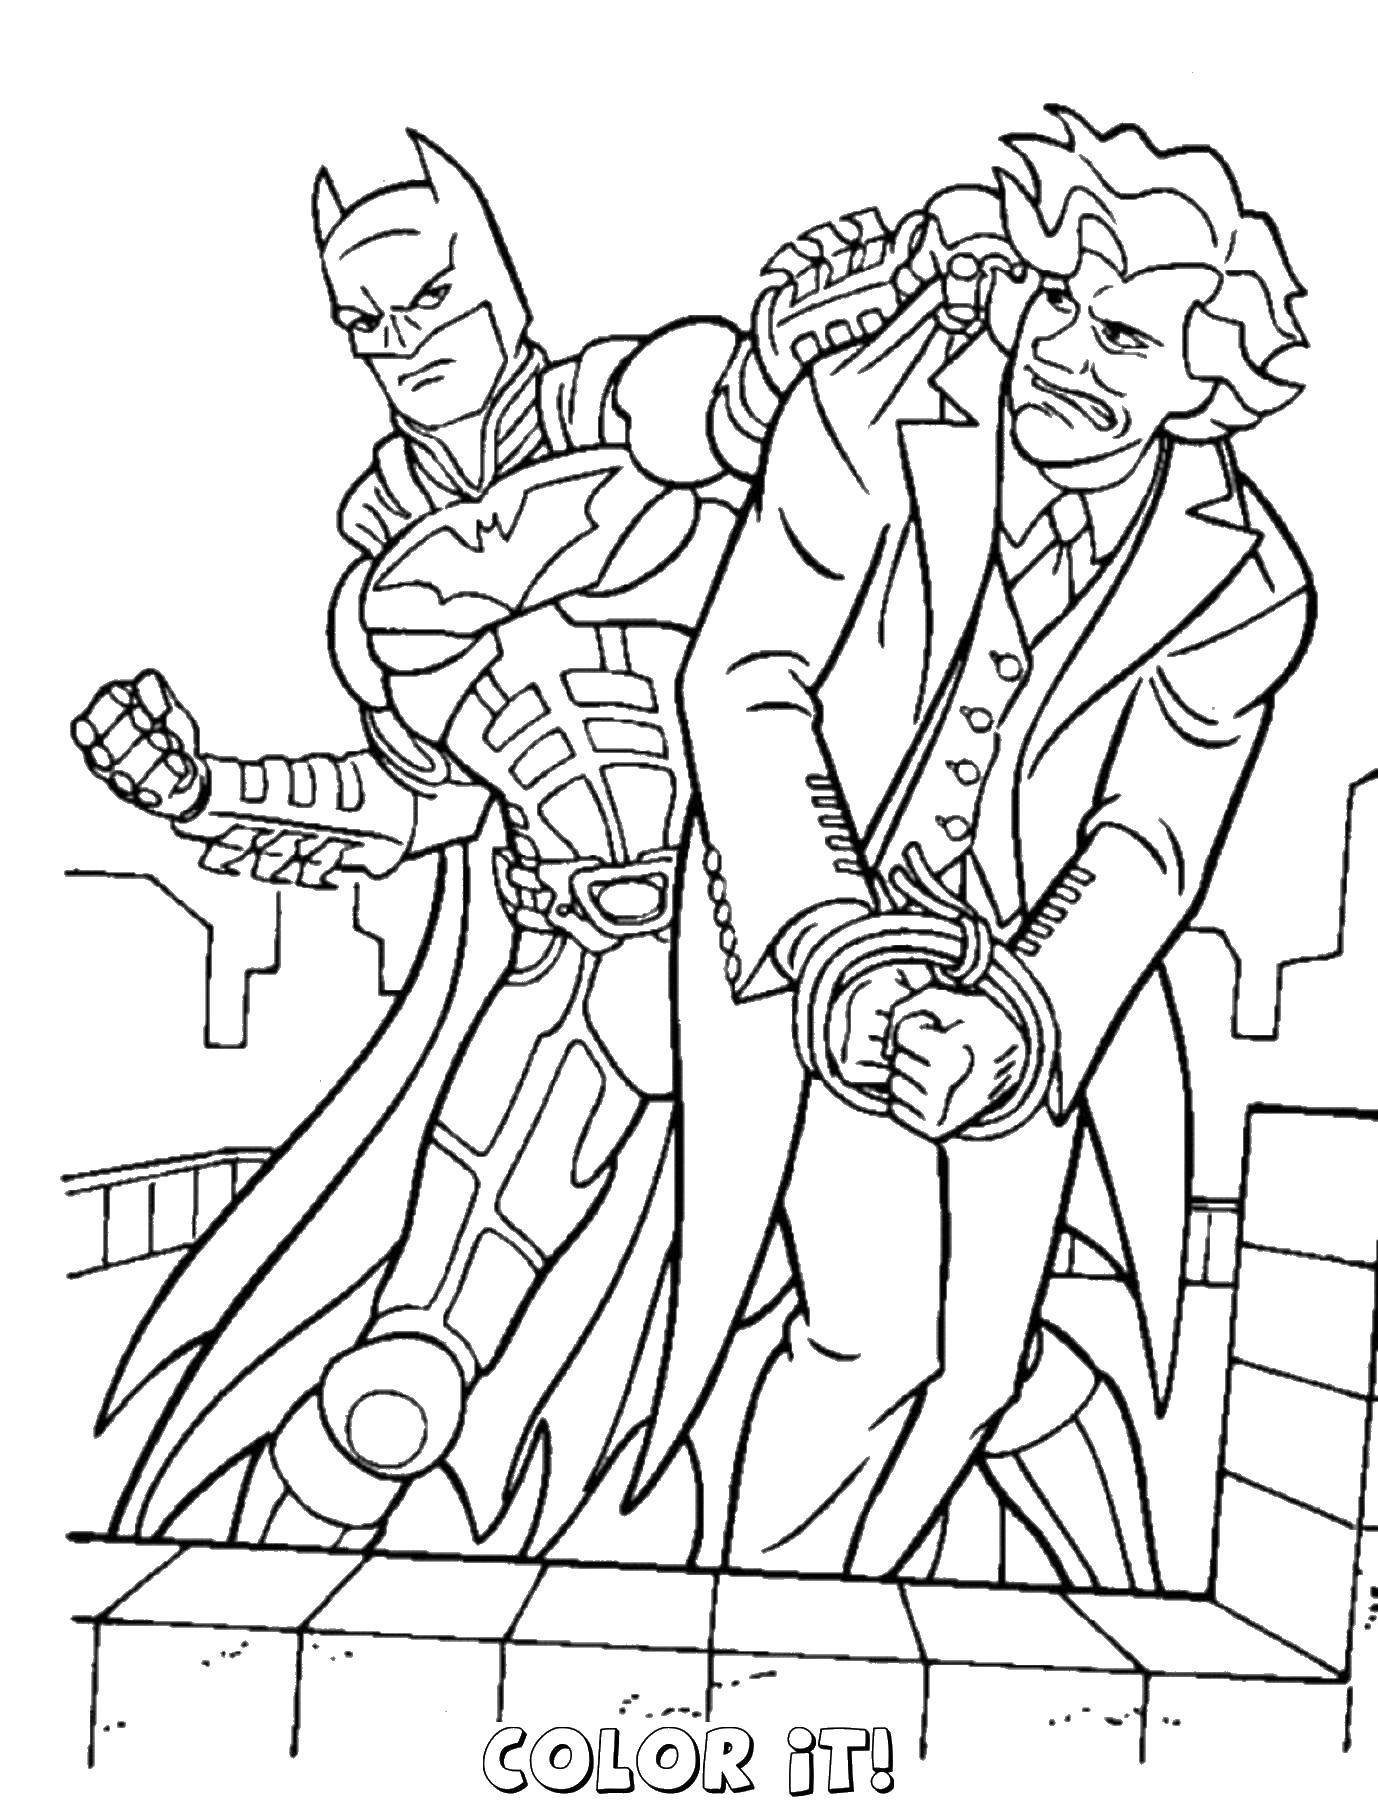 Coloring Batman vs Joker.. Category Comics. Tags:  Comics, Batman.